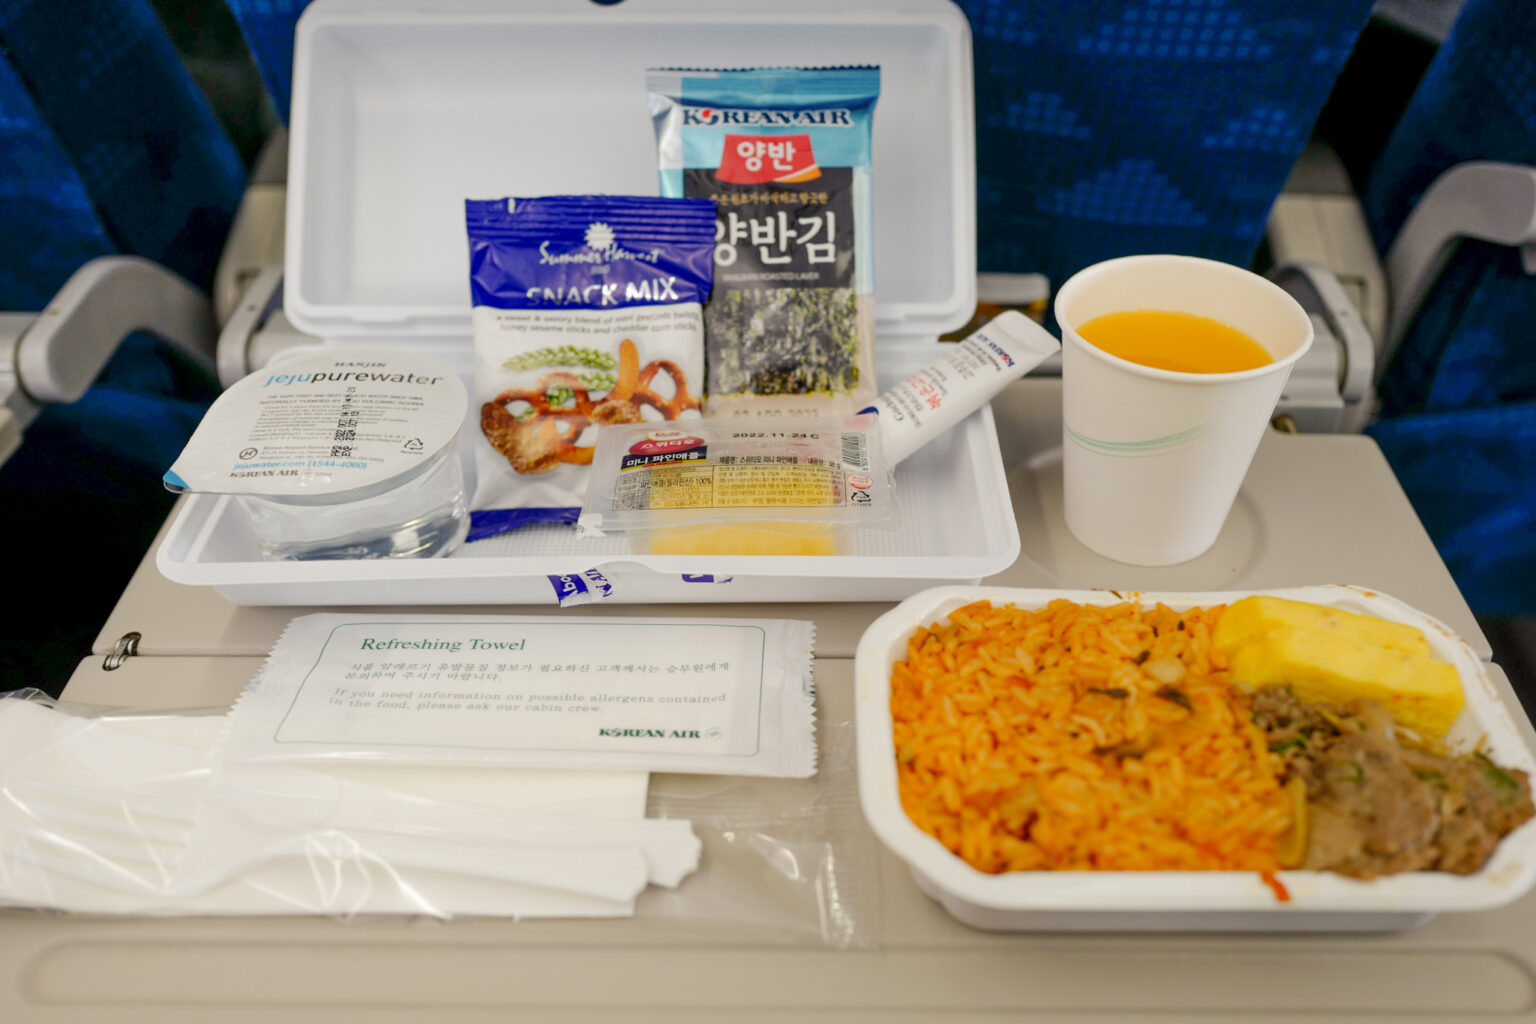 3年ぶりの海外渡航で、機内食が食べられるのは嬉しい。大好きな韓国海苔も。